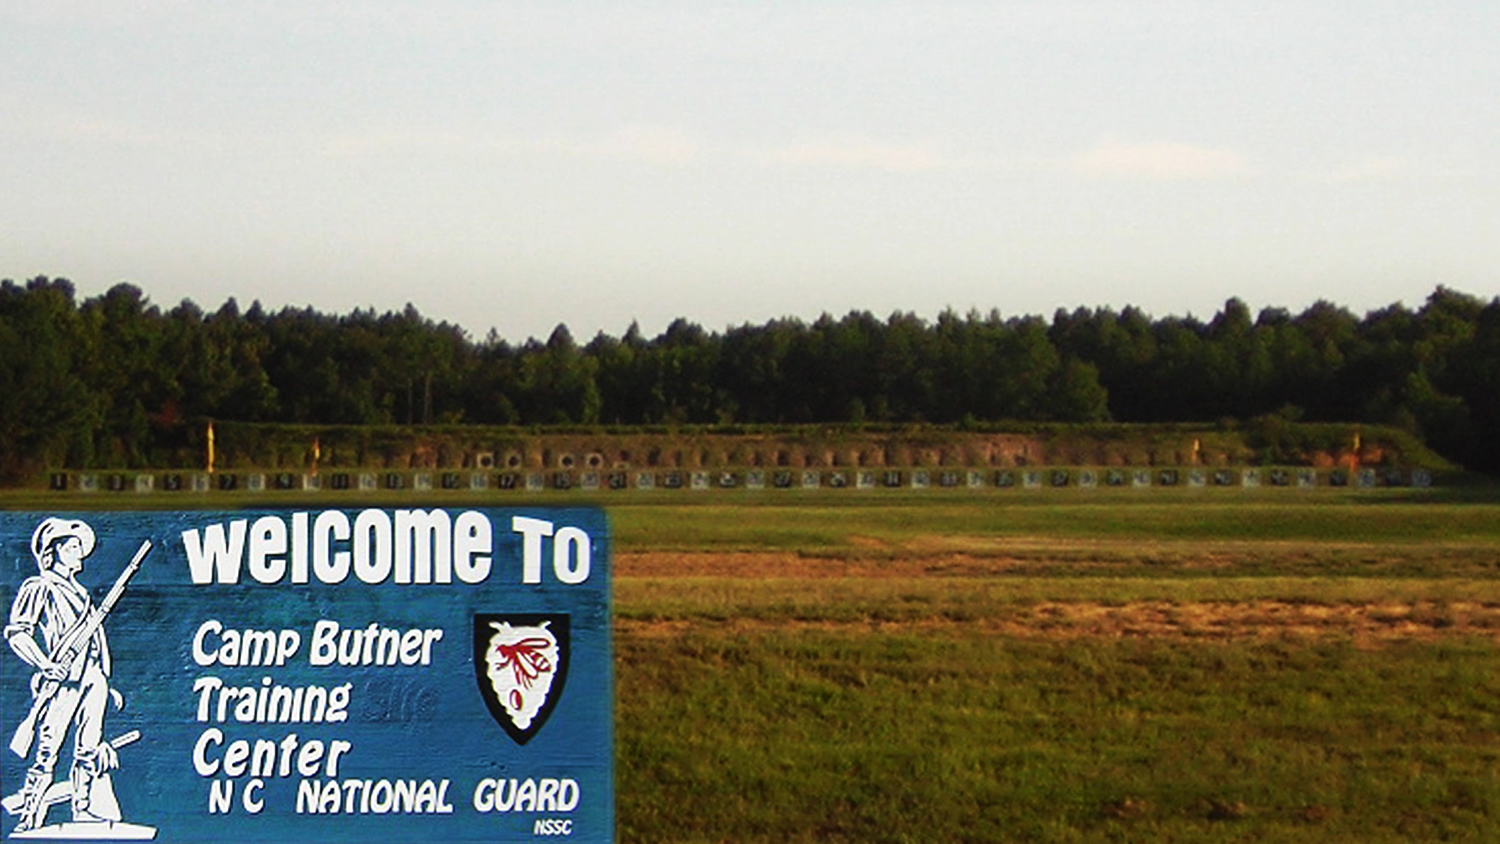 North State Shooting Club at Camp Butner, North Carolina An NRA